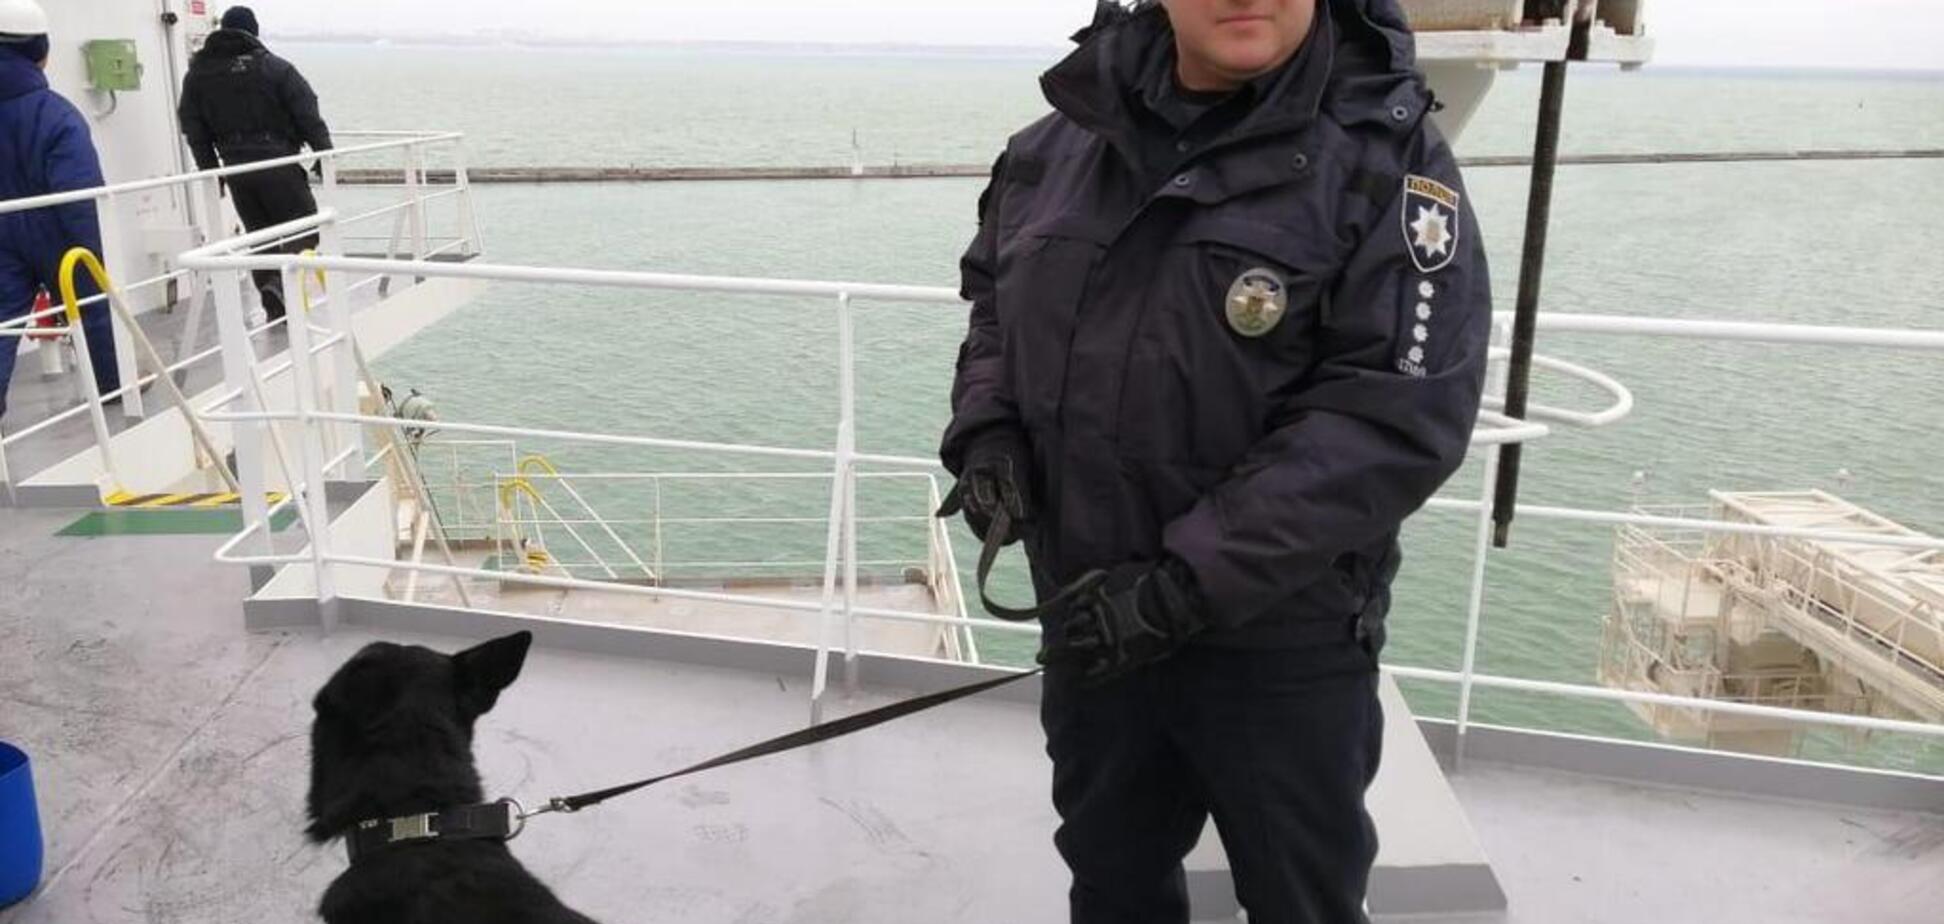 В Одессе полиция проверяла сообщение о минировании судна